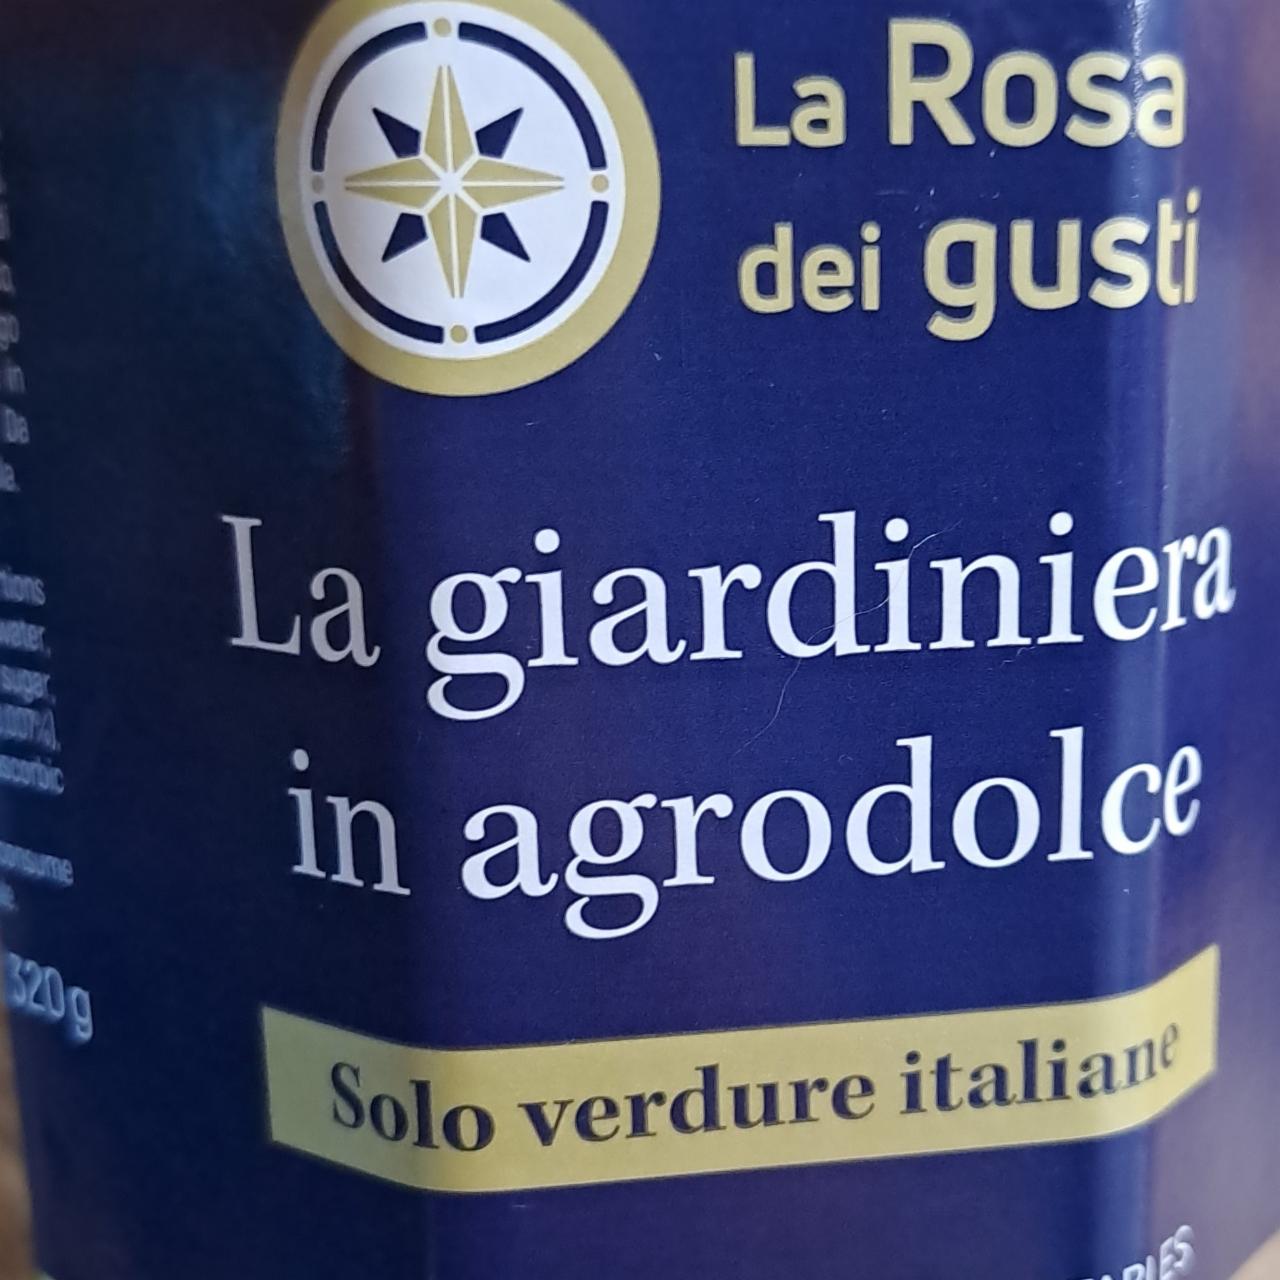 Fotografie - La giardiniera in agrodolce, La Rosa dei gusti